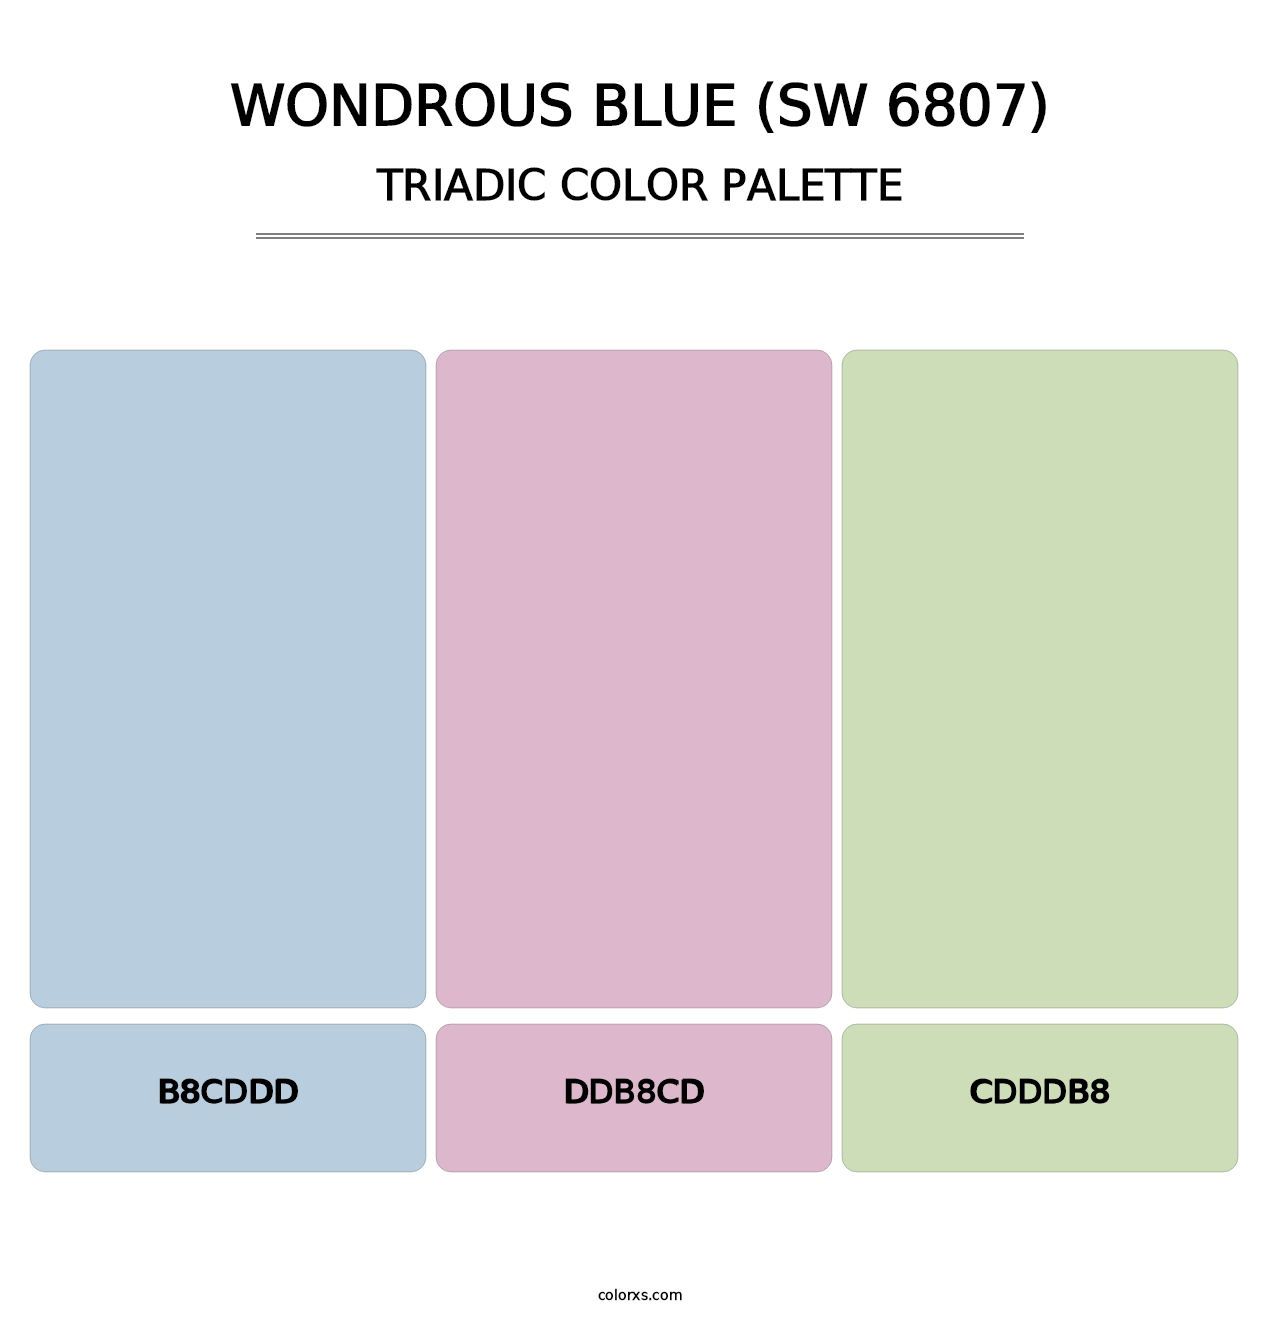 Wondrous Blue (SW 6807) - Triadic Color Palette